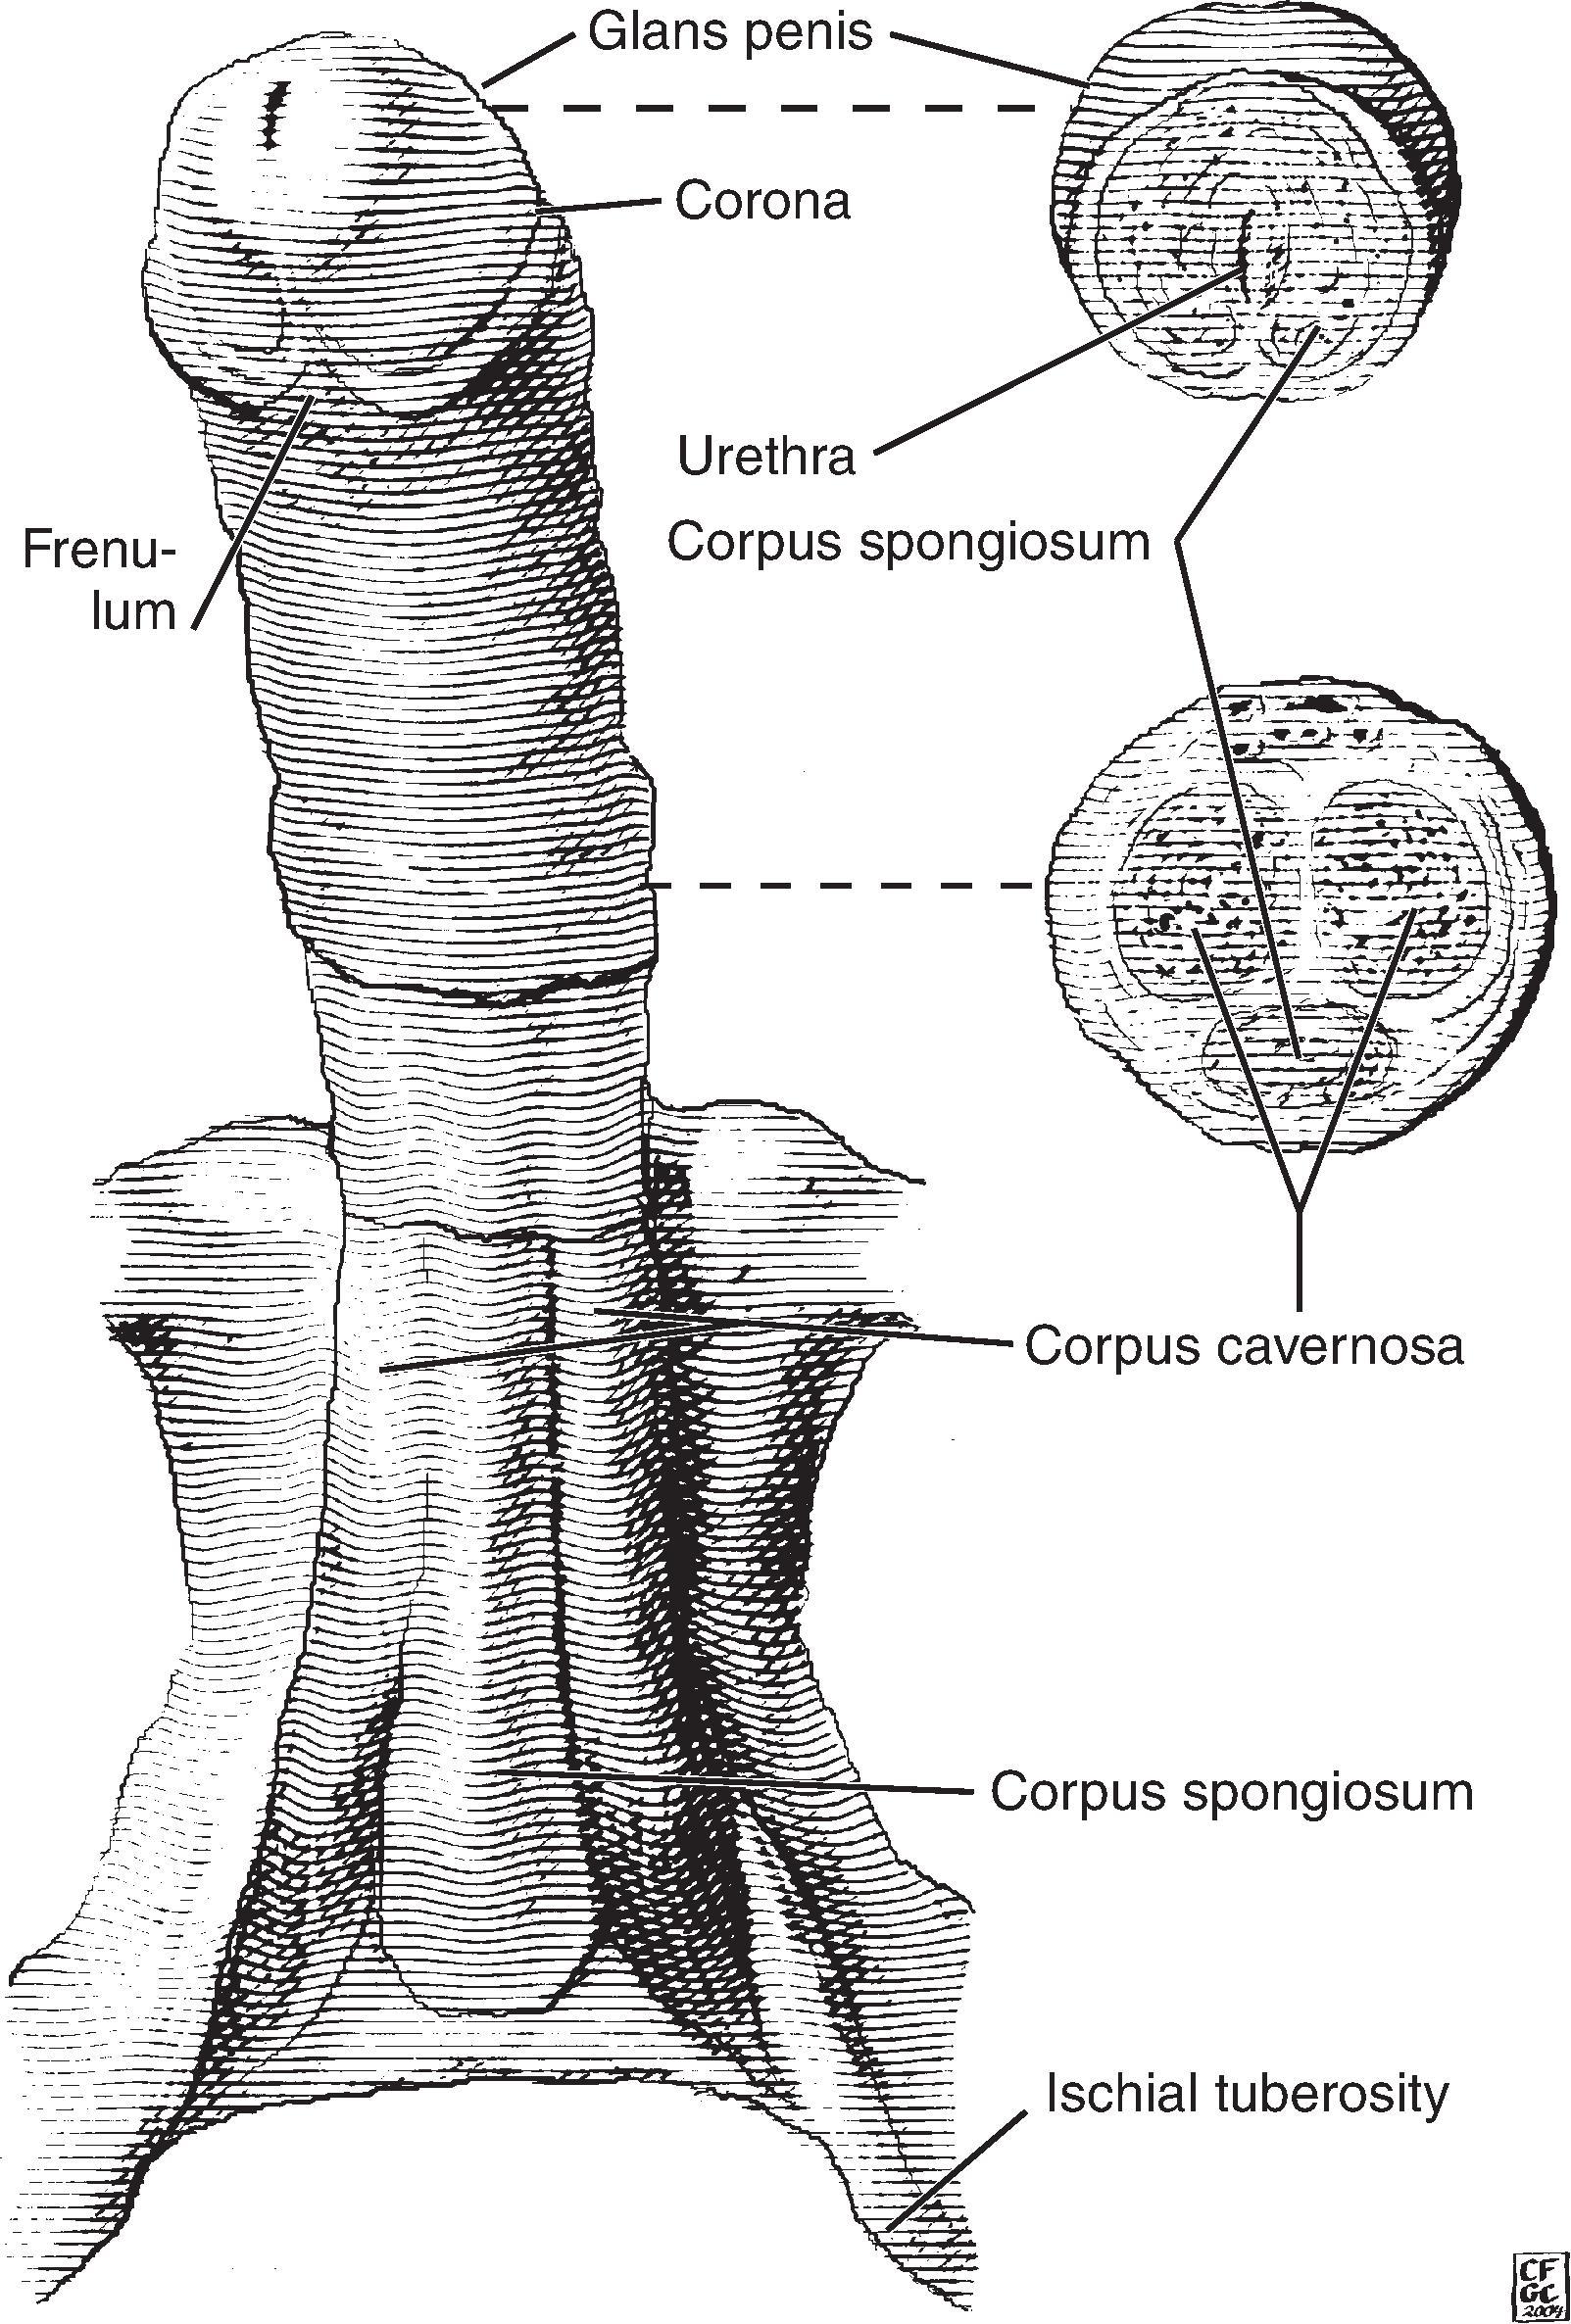 Figure 27.1, Penis anatomy.